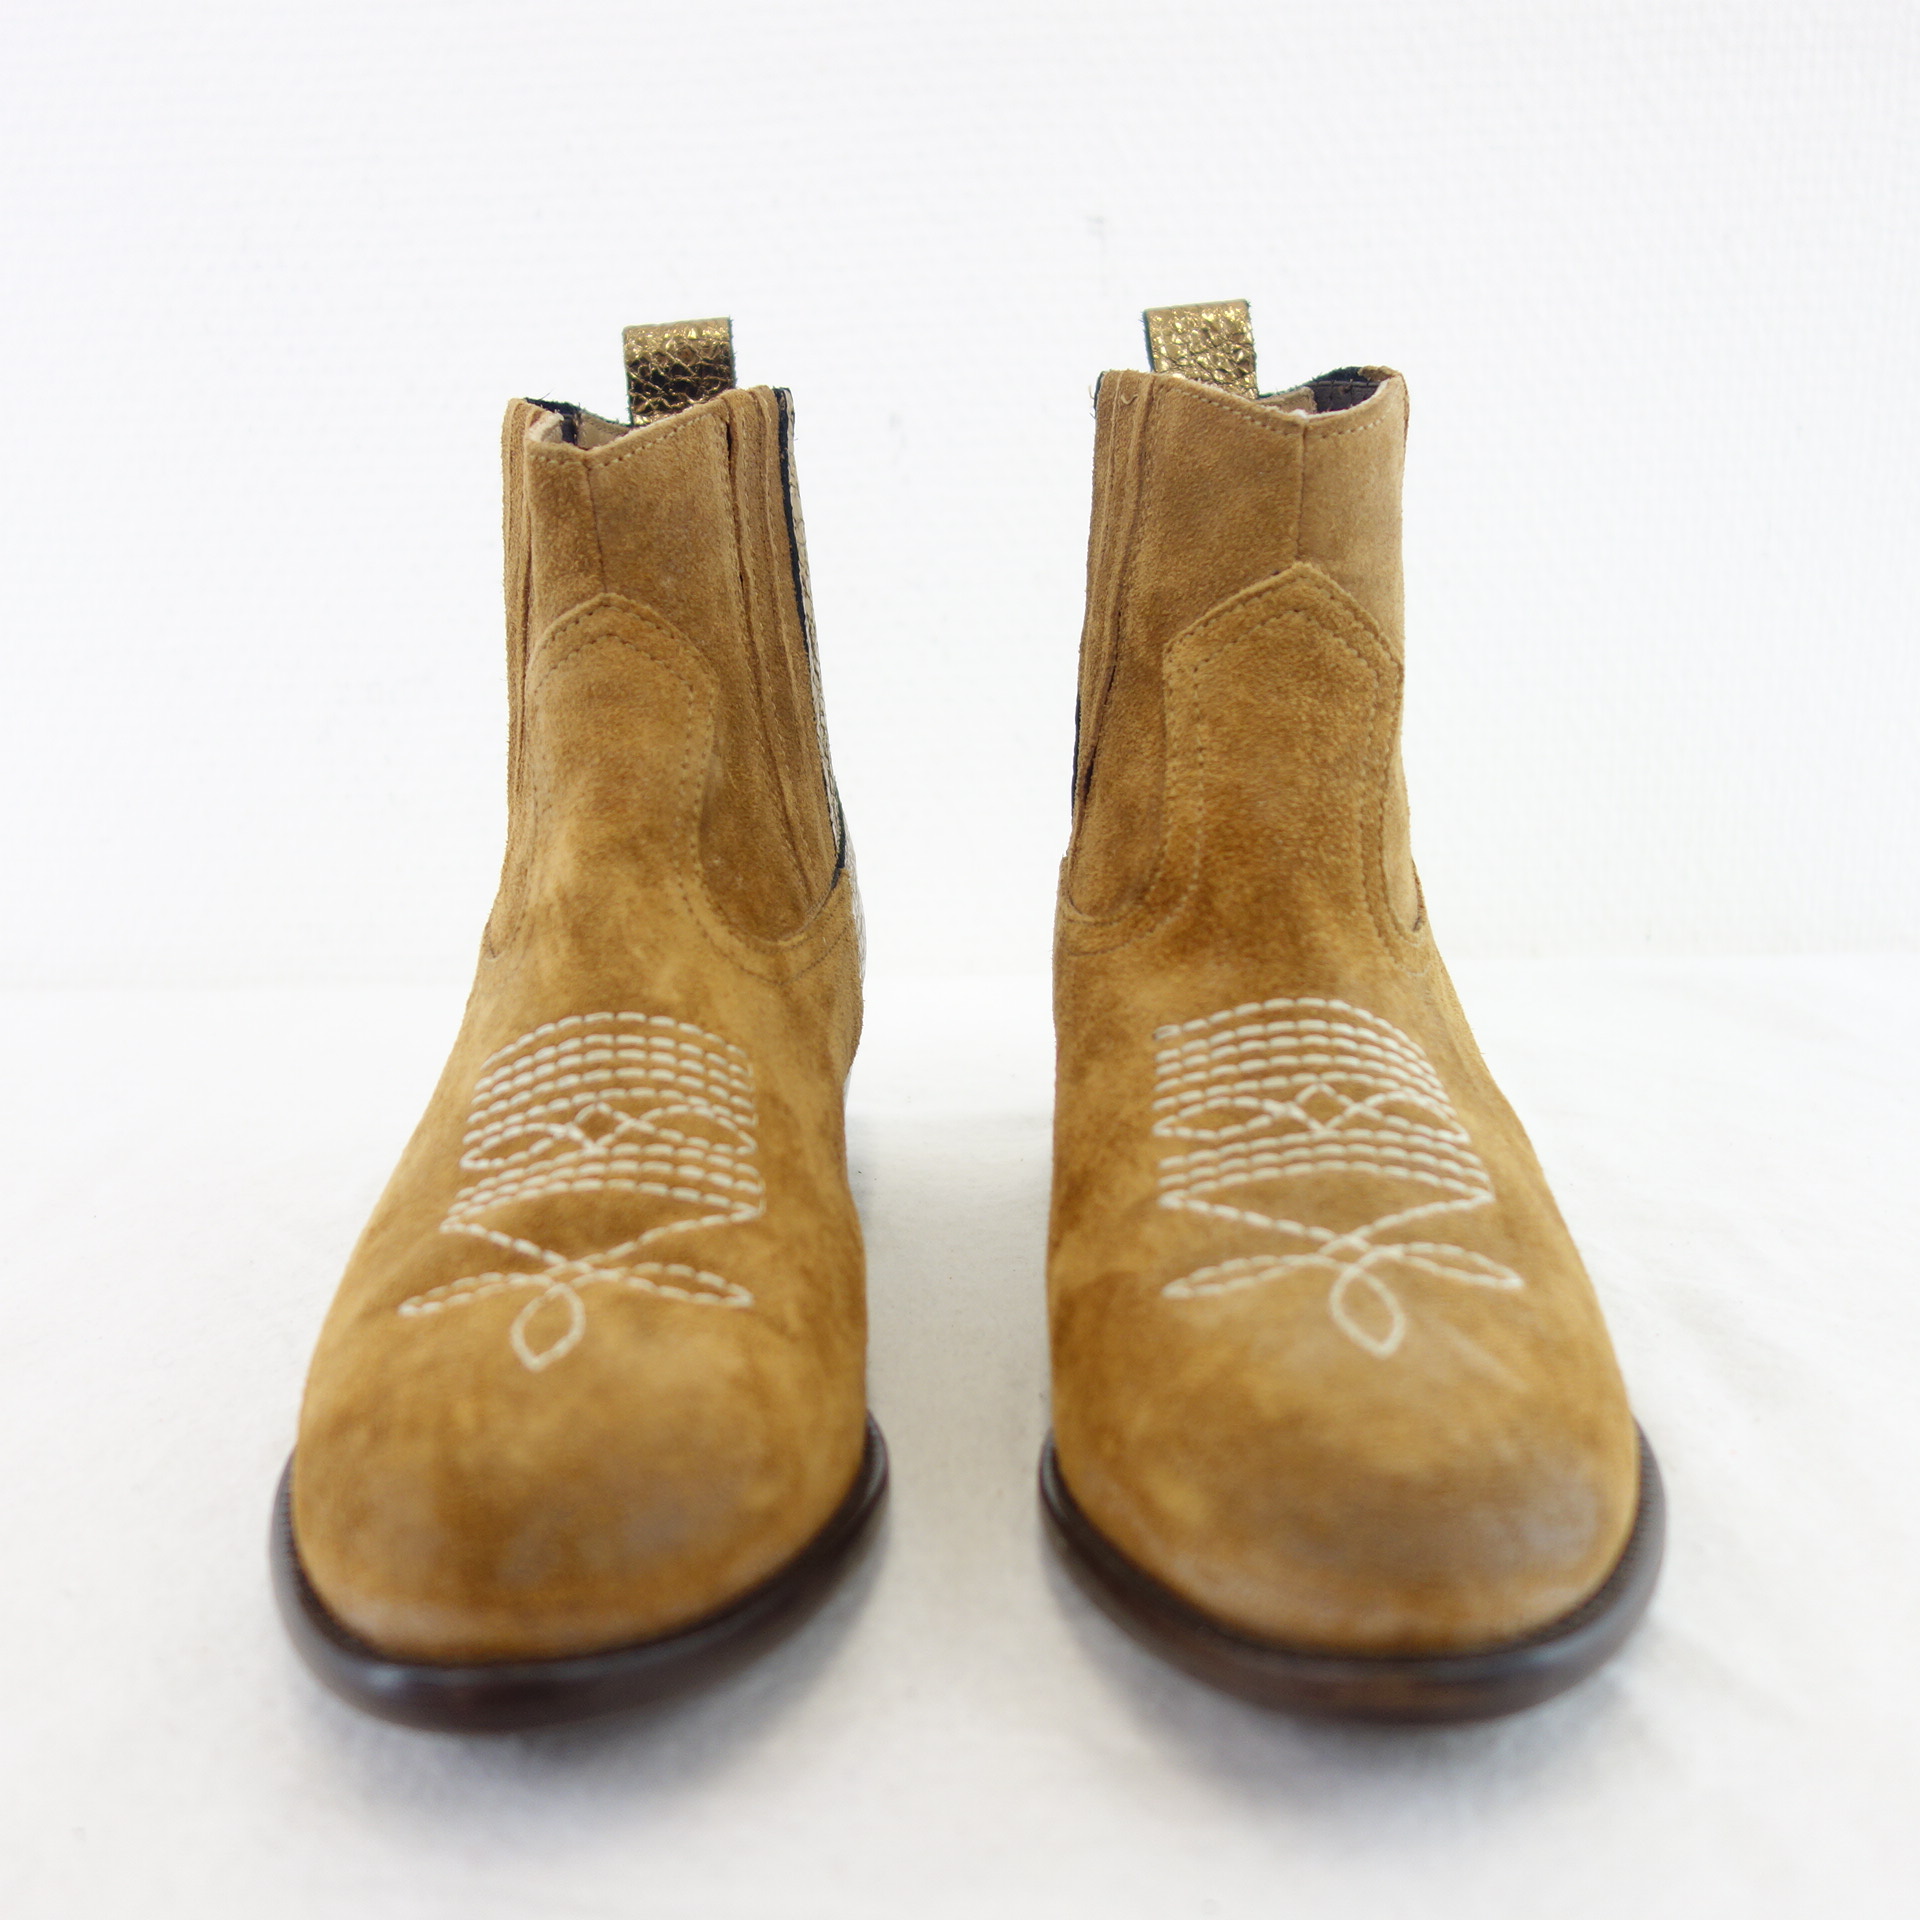 MÈLINÉ Damen Schuhe Stiefeletten Stiefel Celsea Boots Braun Gold Leder 37 ( 38 )